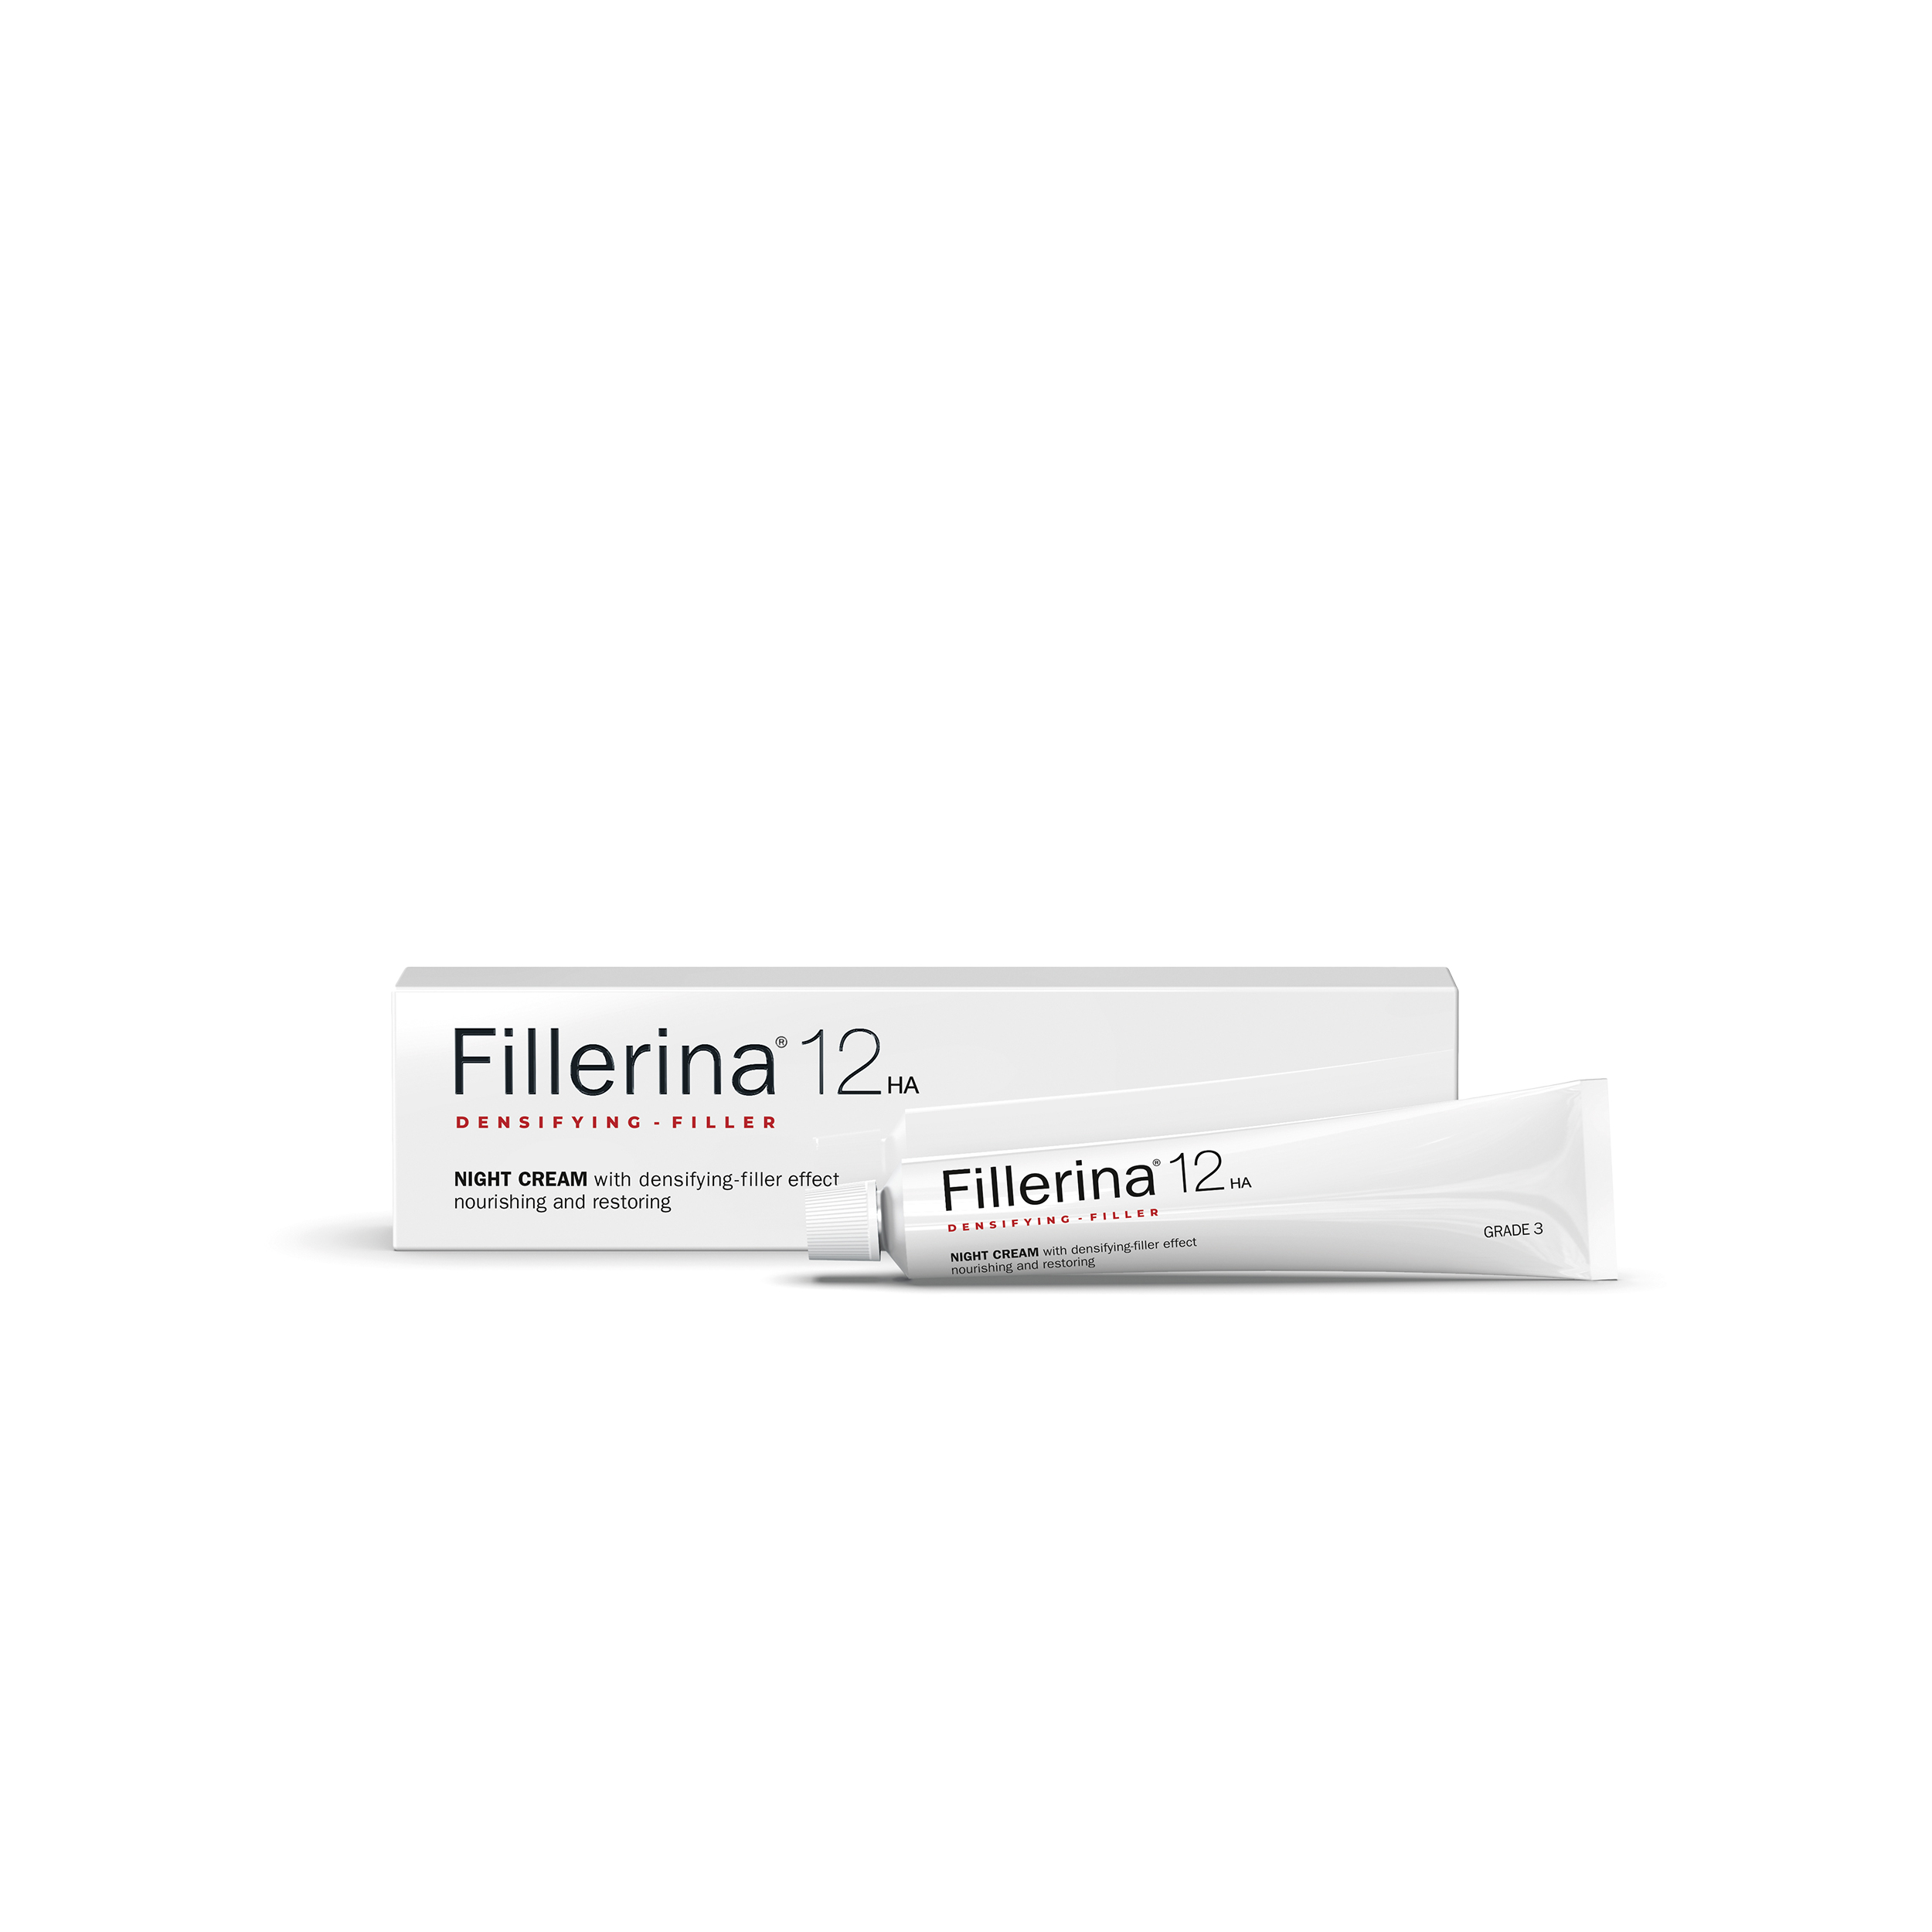 Fillerina Fillerina Восстанавливающий ночной крем для лица Fillerina 12 12HA Densifying-Filler, уровень 3 50 мл